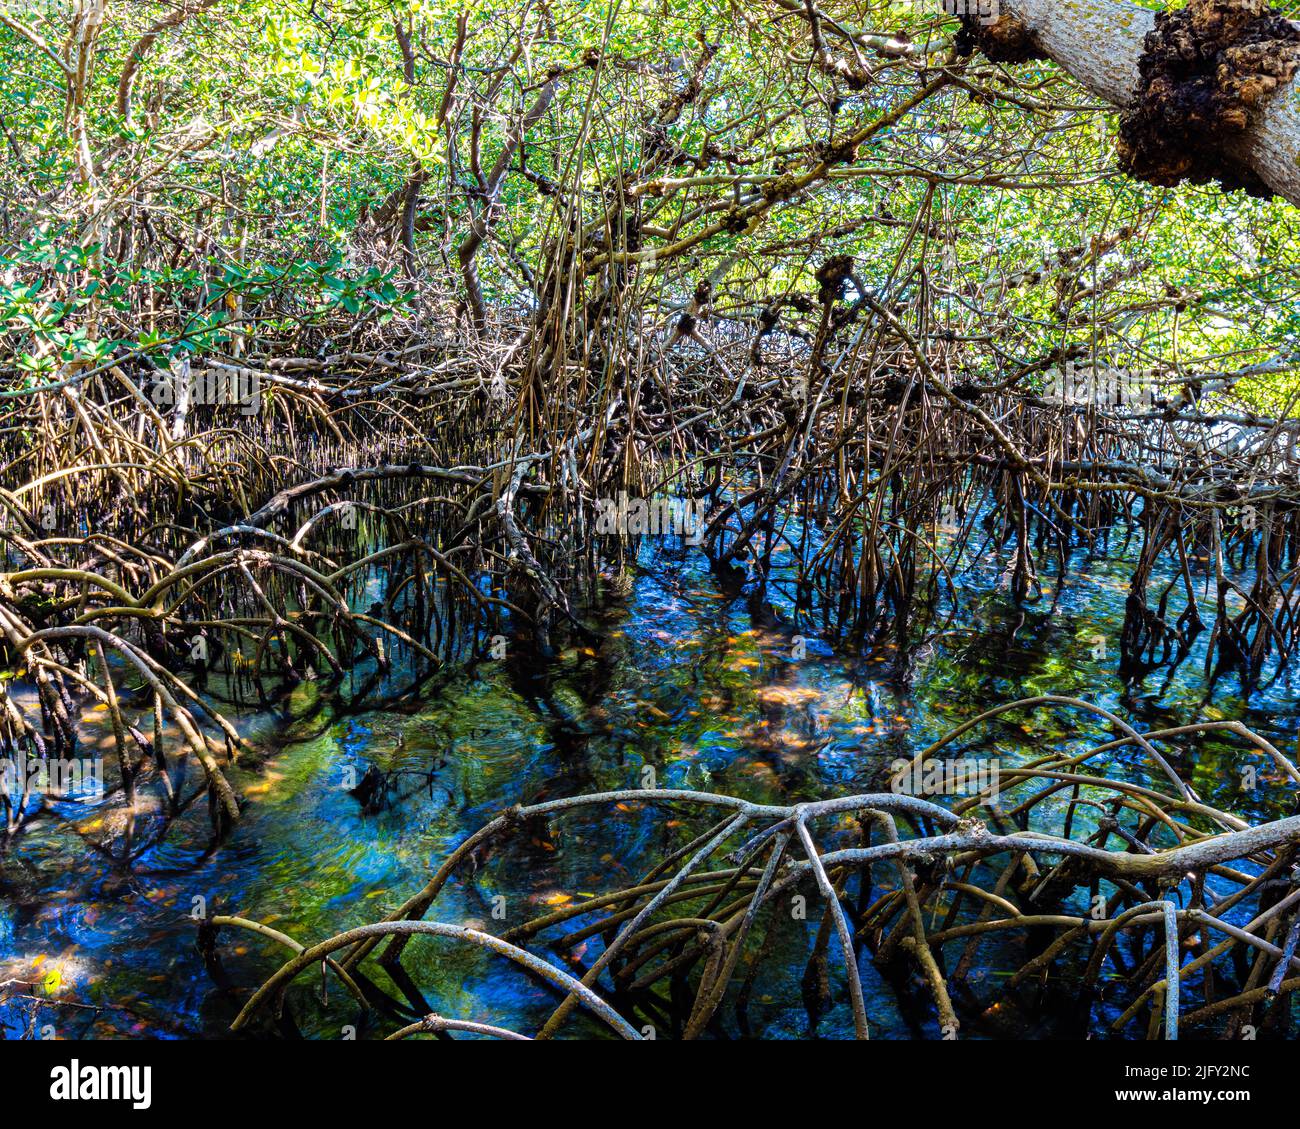 Forêt de mangroves sur Sarasota Bay, Leffis Key Preserve, Bradenton Beach, Floride, États-Unis Banque D'Images